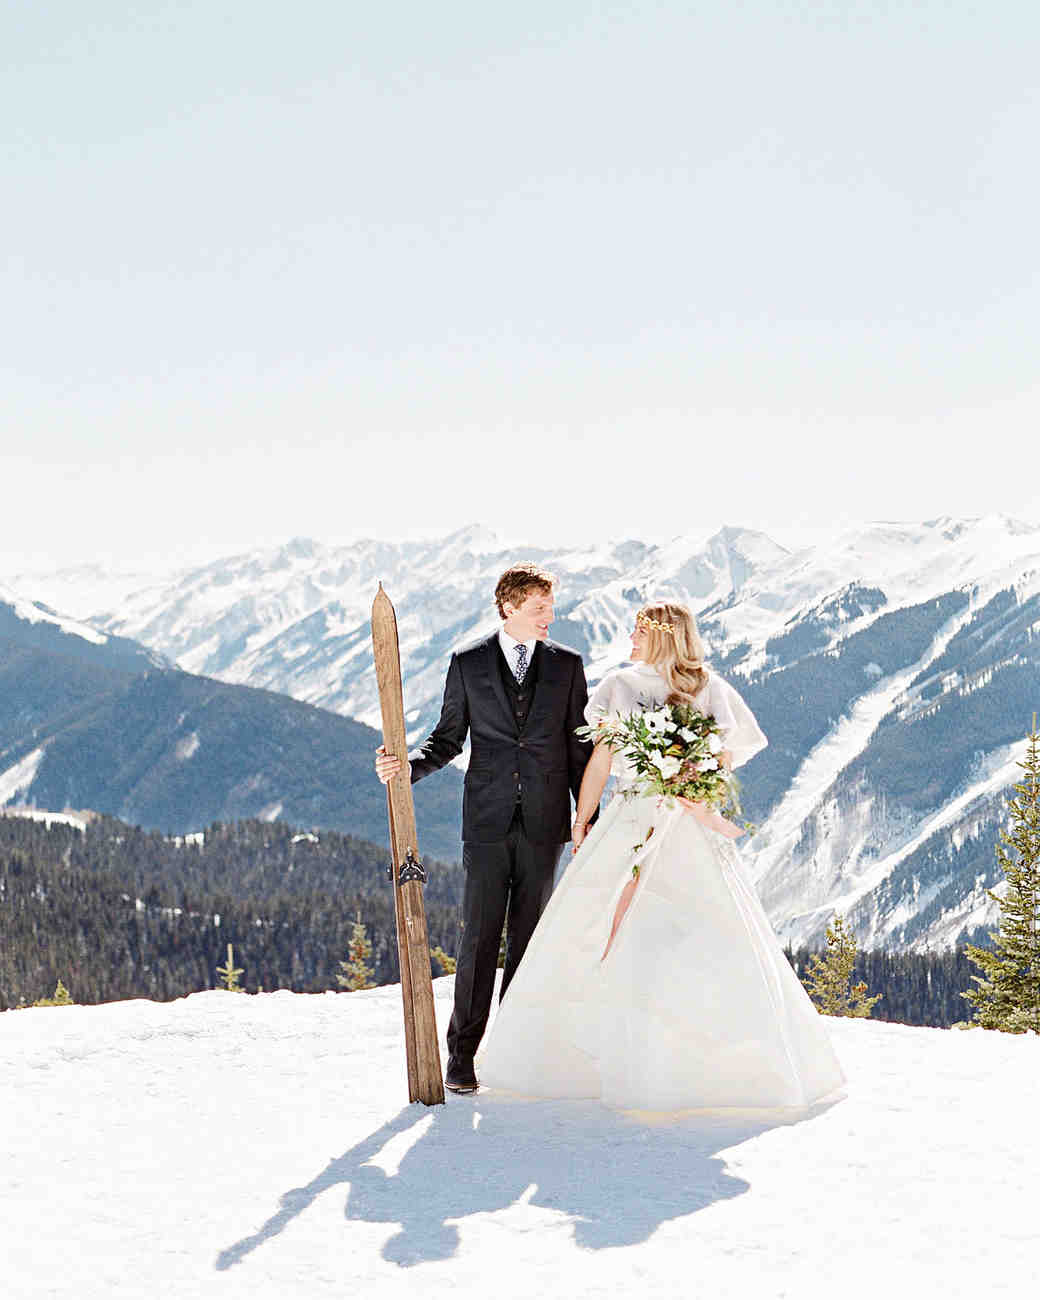 A Snowy Winter Wedding In Aspen Colorado Martha Stewart Weddings